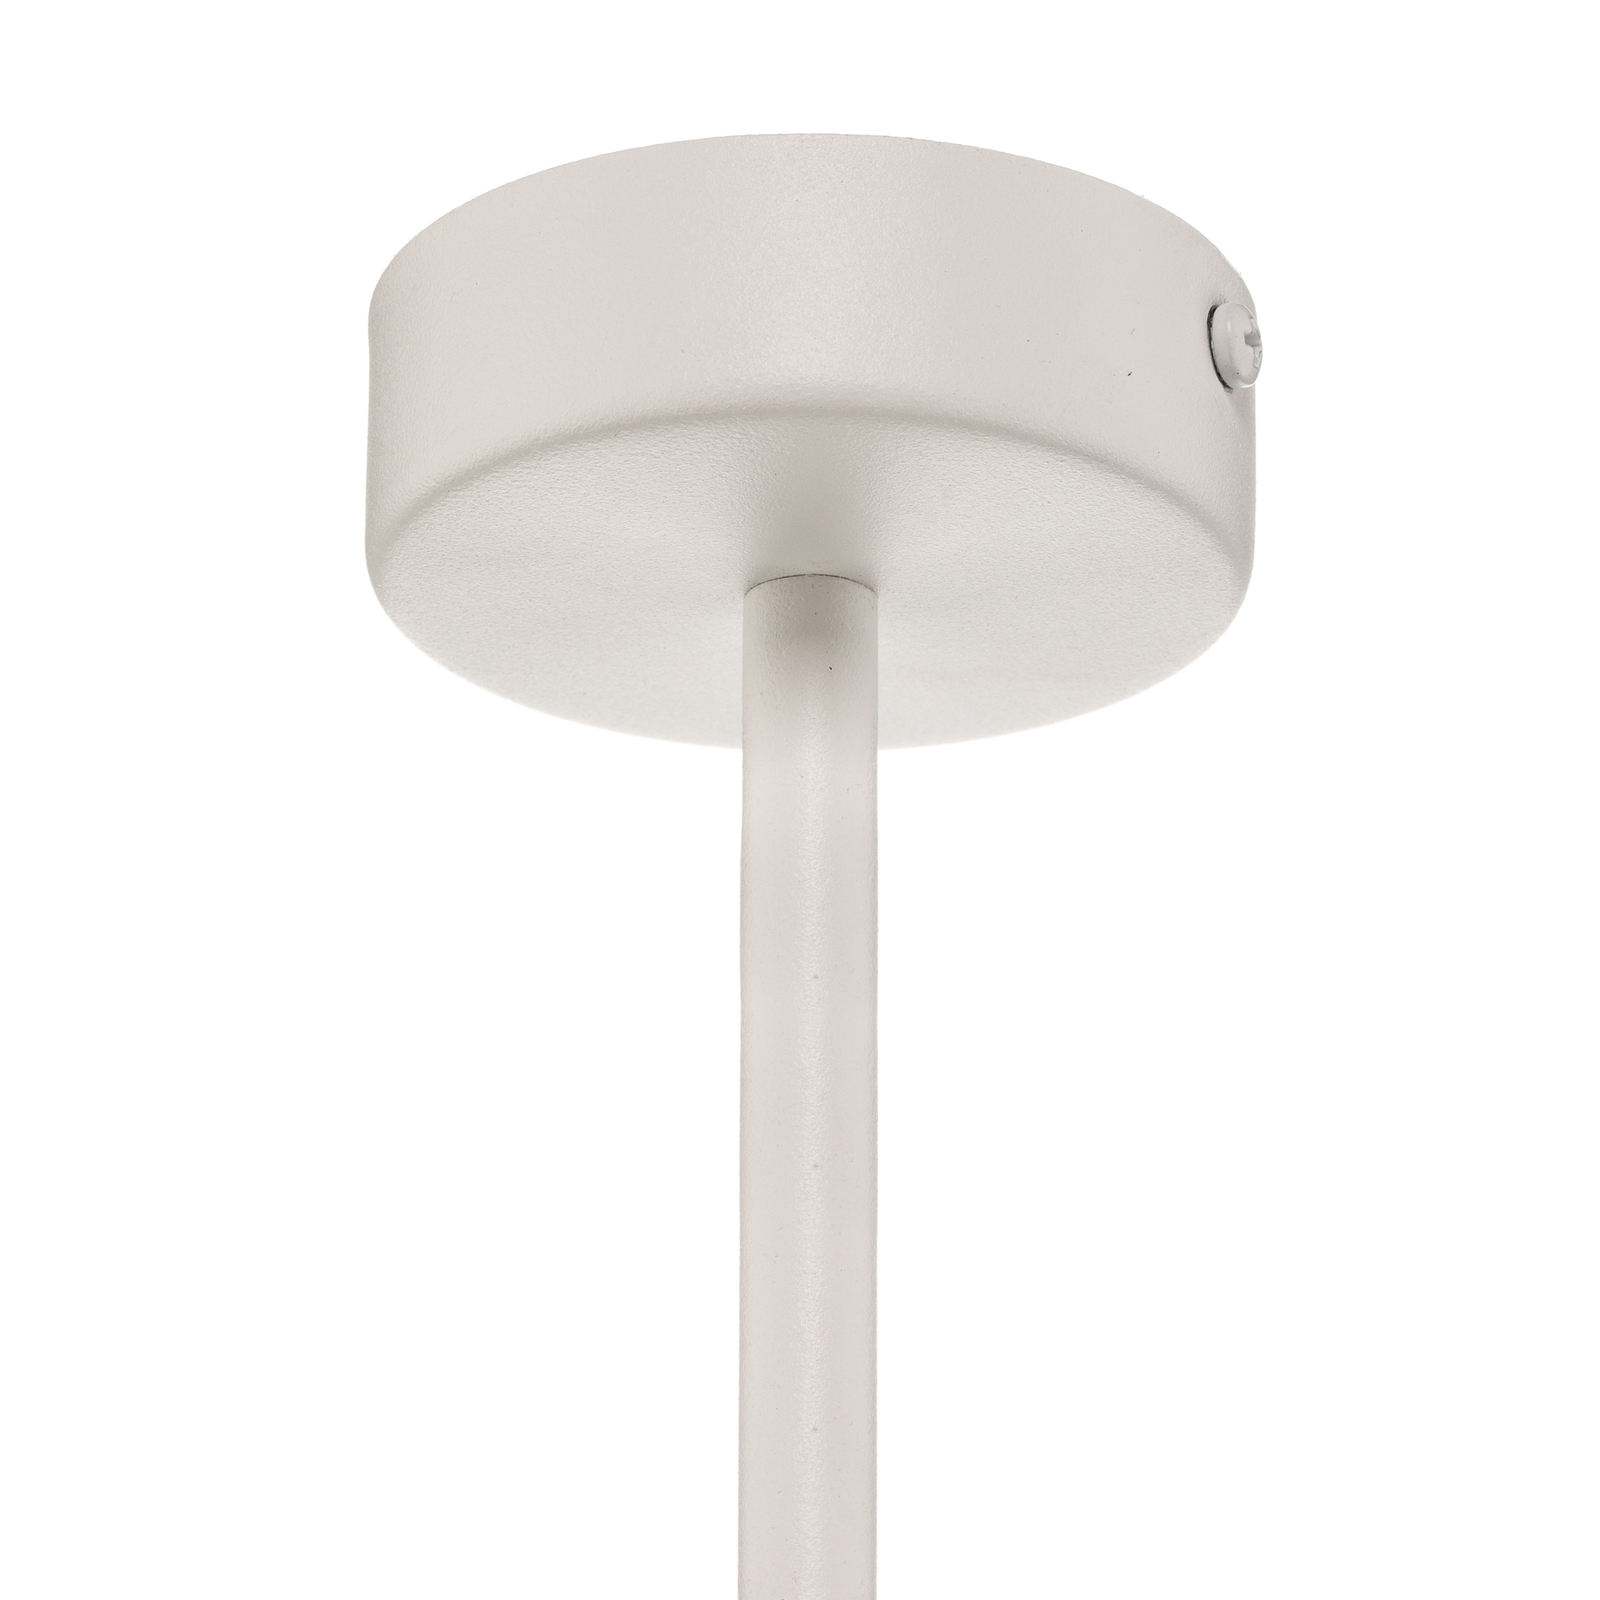 Frez modul loftlampe Ø 17,5 cm, hvid